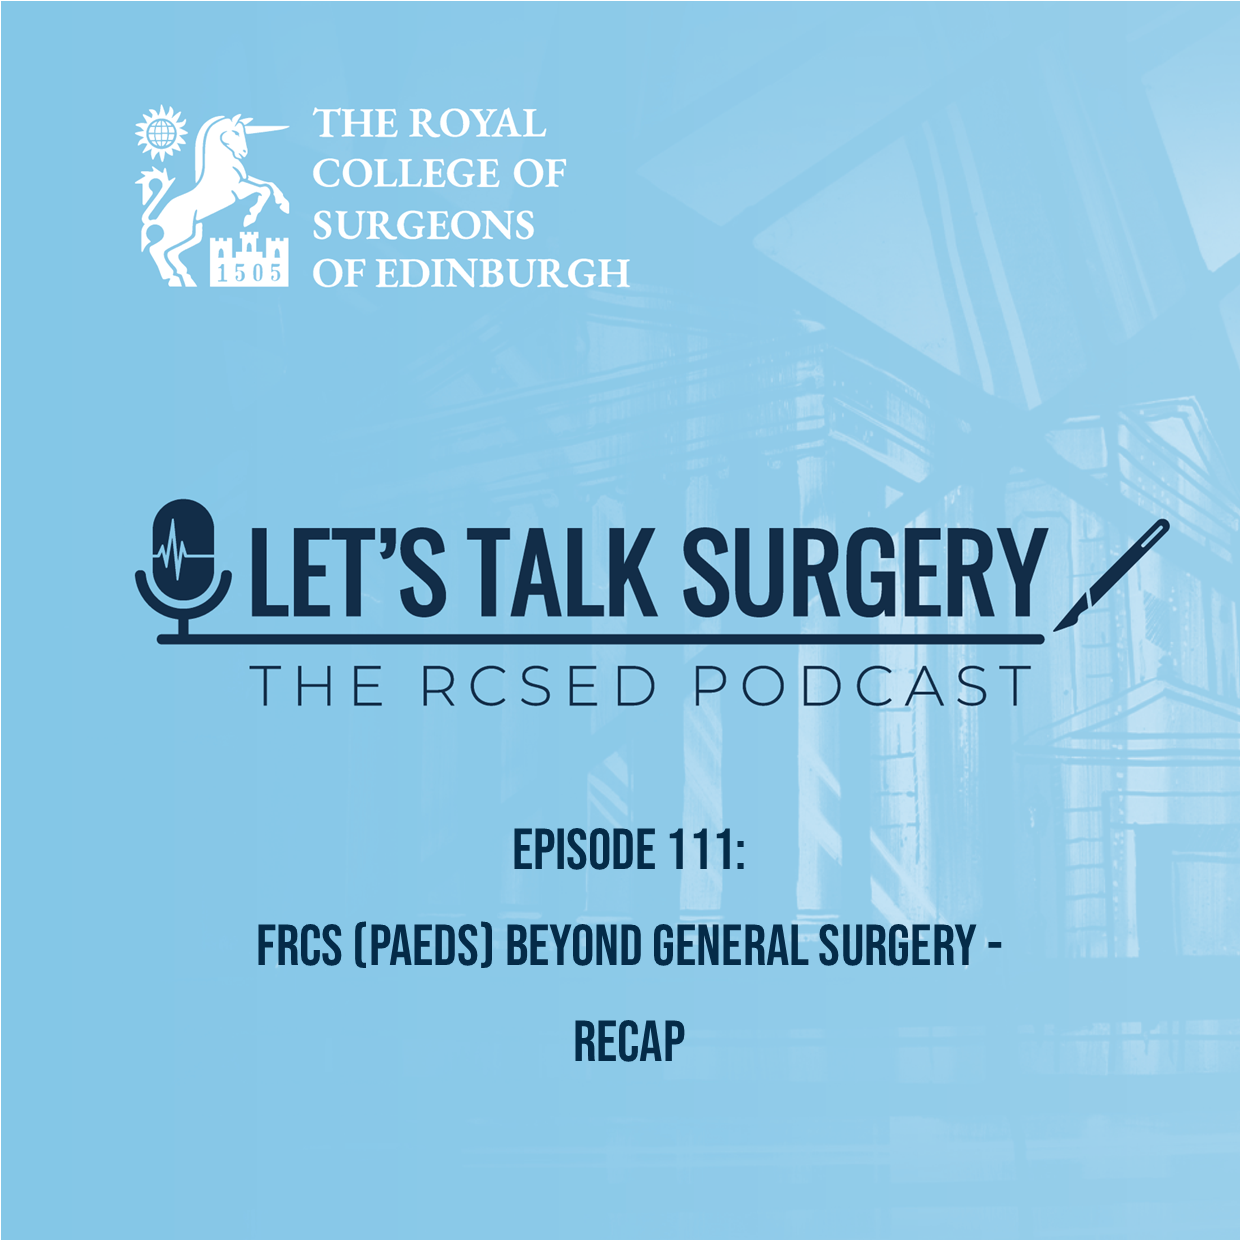 FRCS (Paeds) Beyond General Surgery - Recap